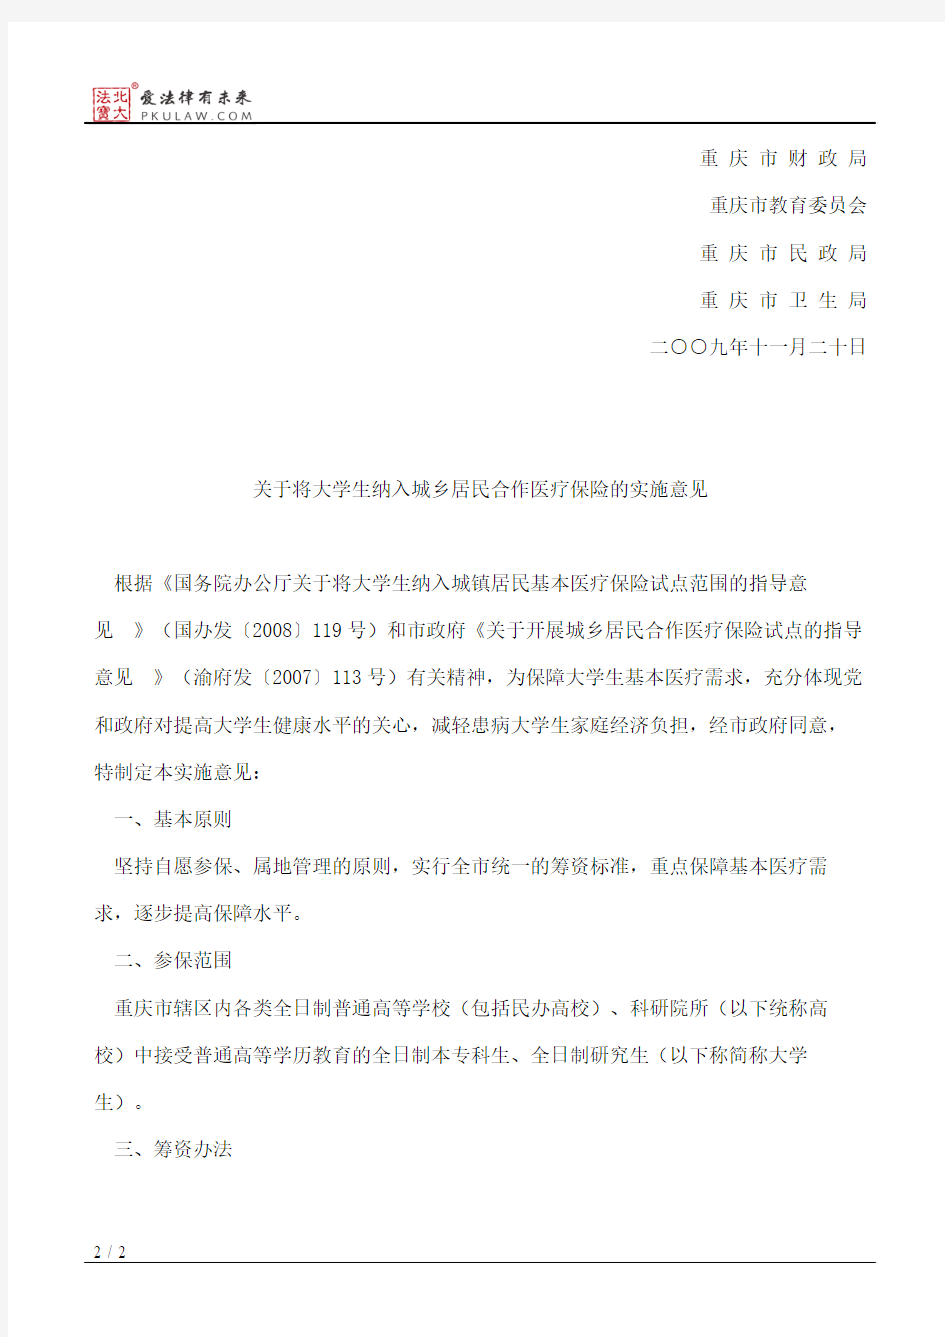 重庆市人力资源和社会保障局、重庆市财政局、重庆市教育委员会等